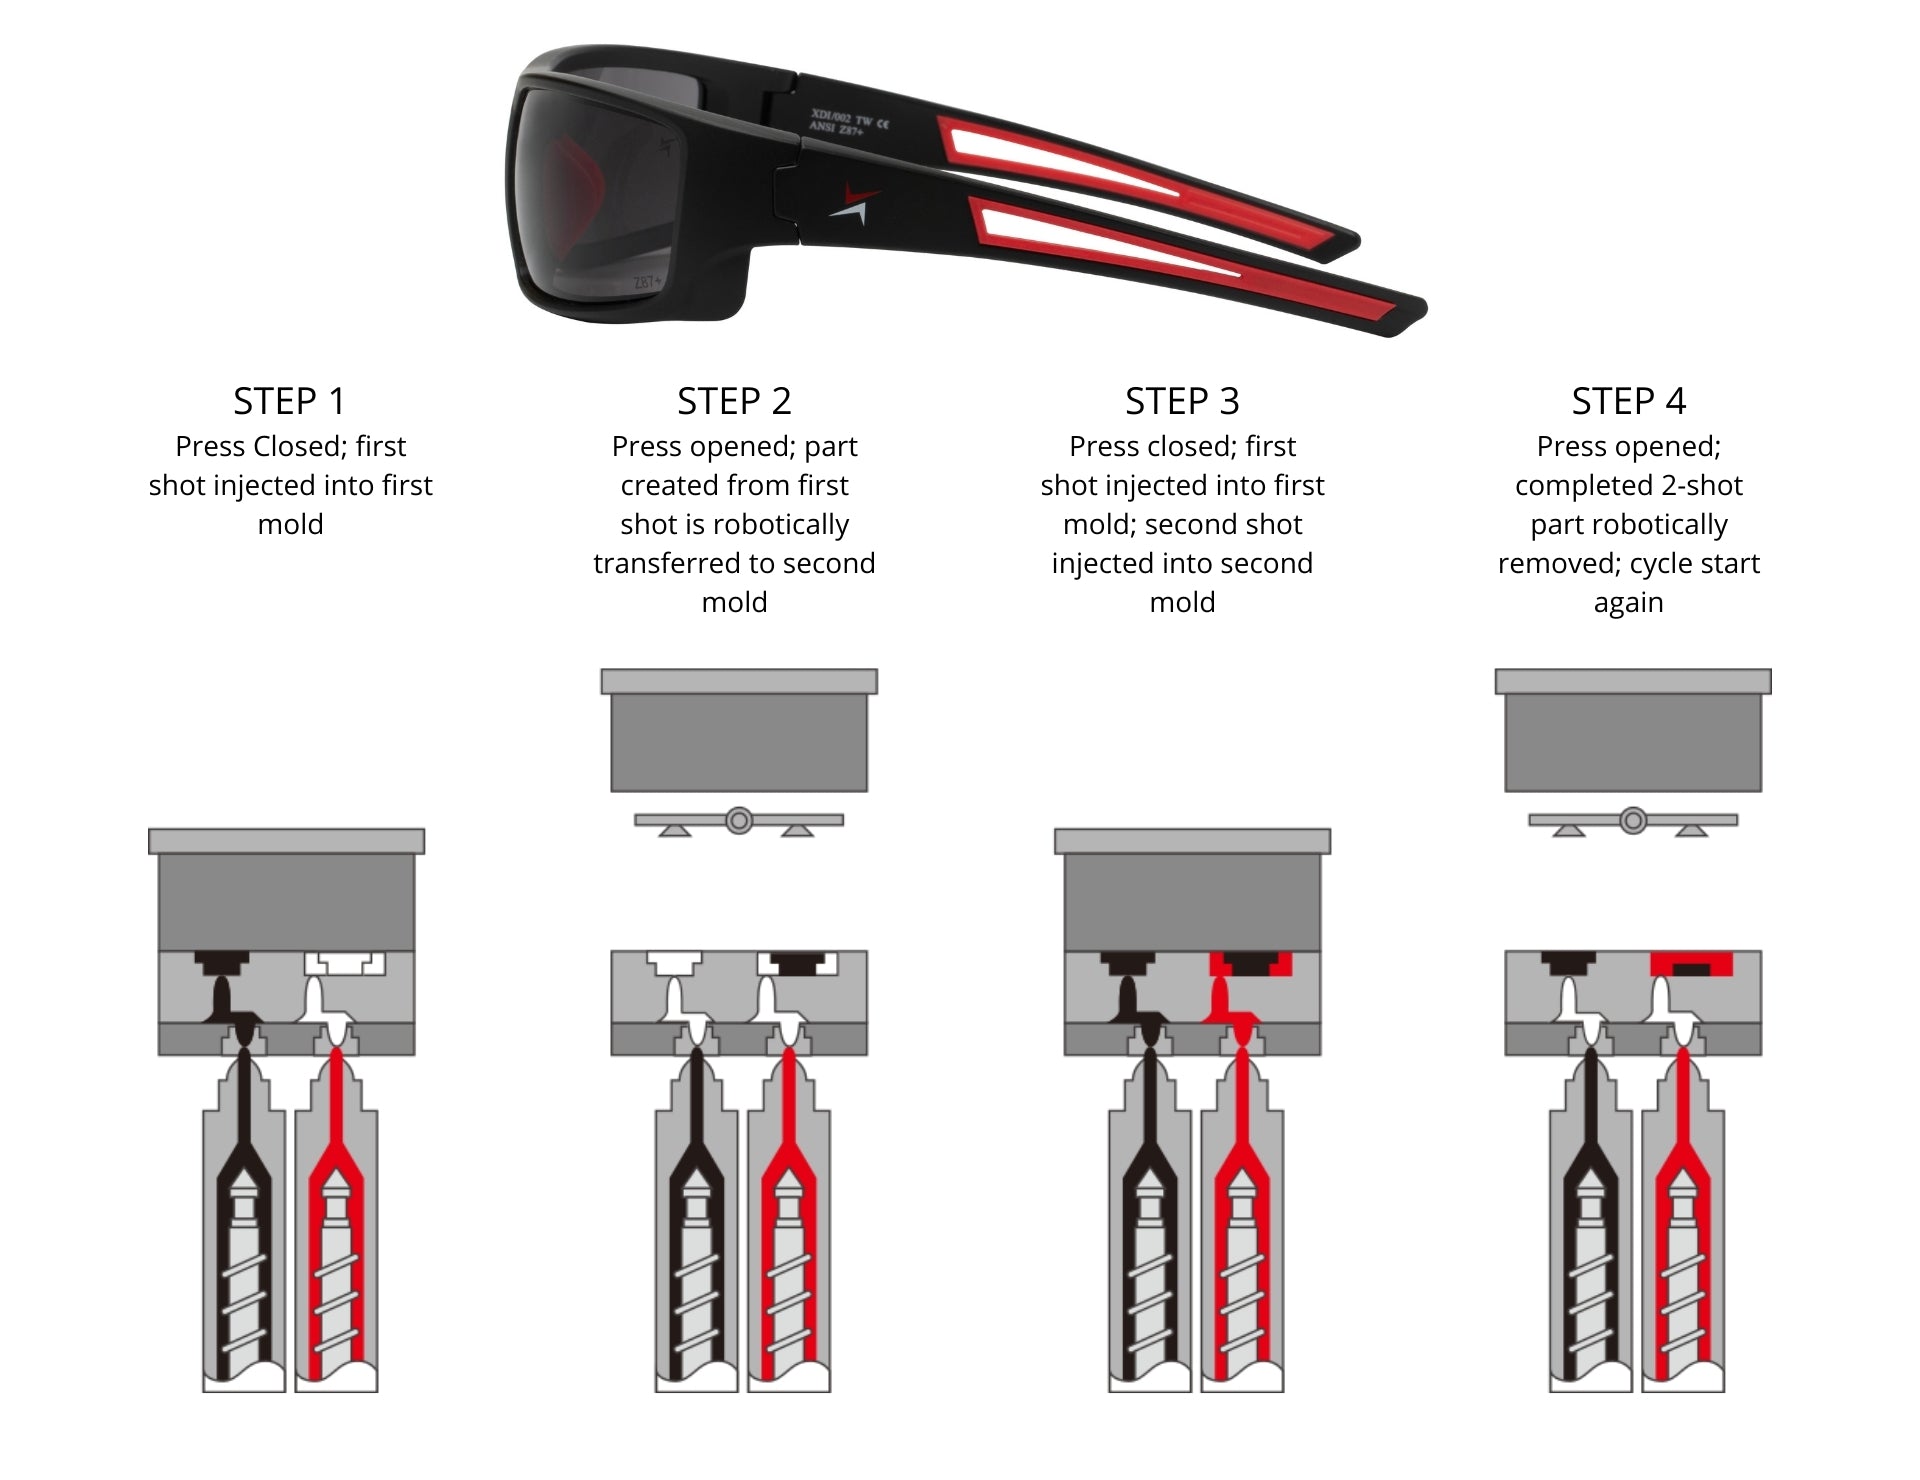  X Power Lentes fotocromáticas de seguridad ANSI Z87+ Lentes  doradas y gafas de sol deportivas con montura media (HECHOS EN TAIWÁN) :  Herramientas y Mejoras del Hogar